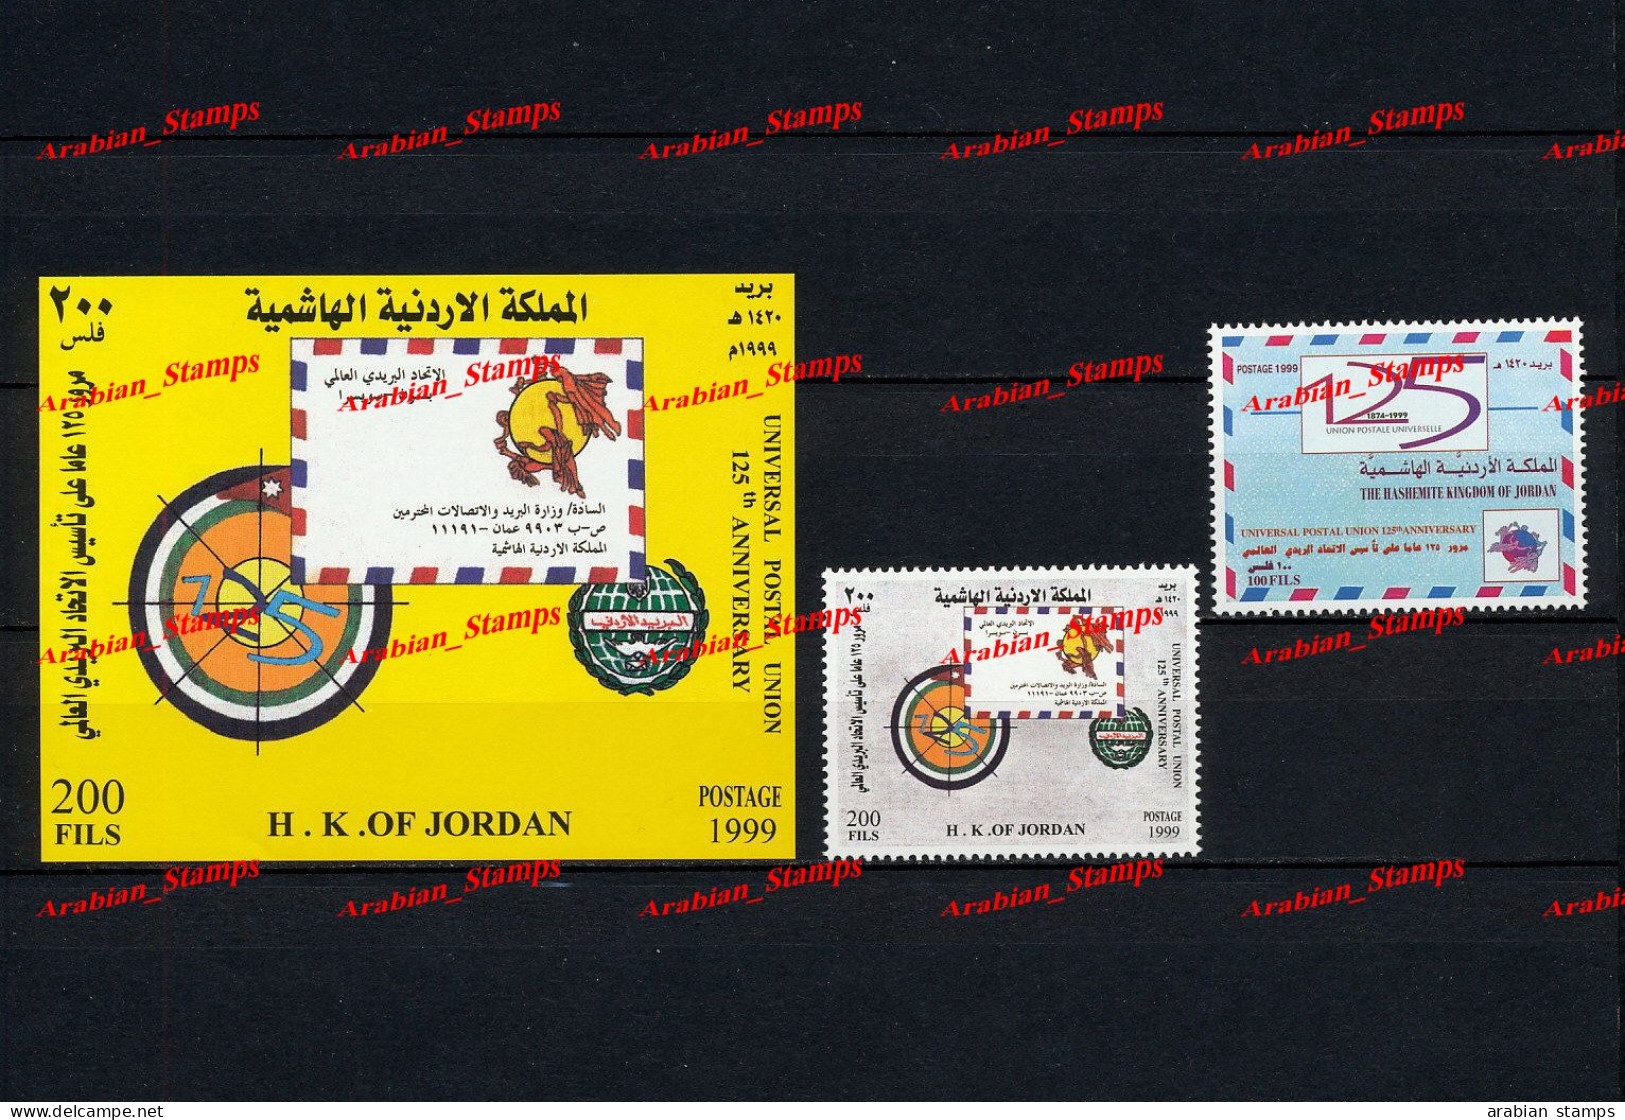 HASHIMATE KINGDOM OF JORDAN JORDANIE 1999 MINT MNH MS SHEET SS 125TH ANNIVERSARY UNIVERSAL POSTAL UNION UPU EMBLEM POST - Jordanien